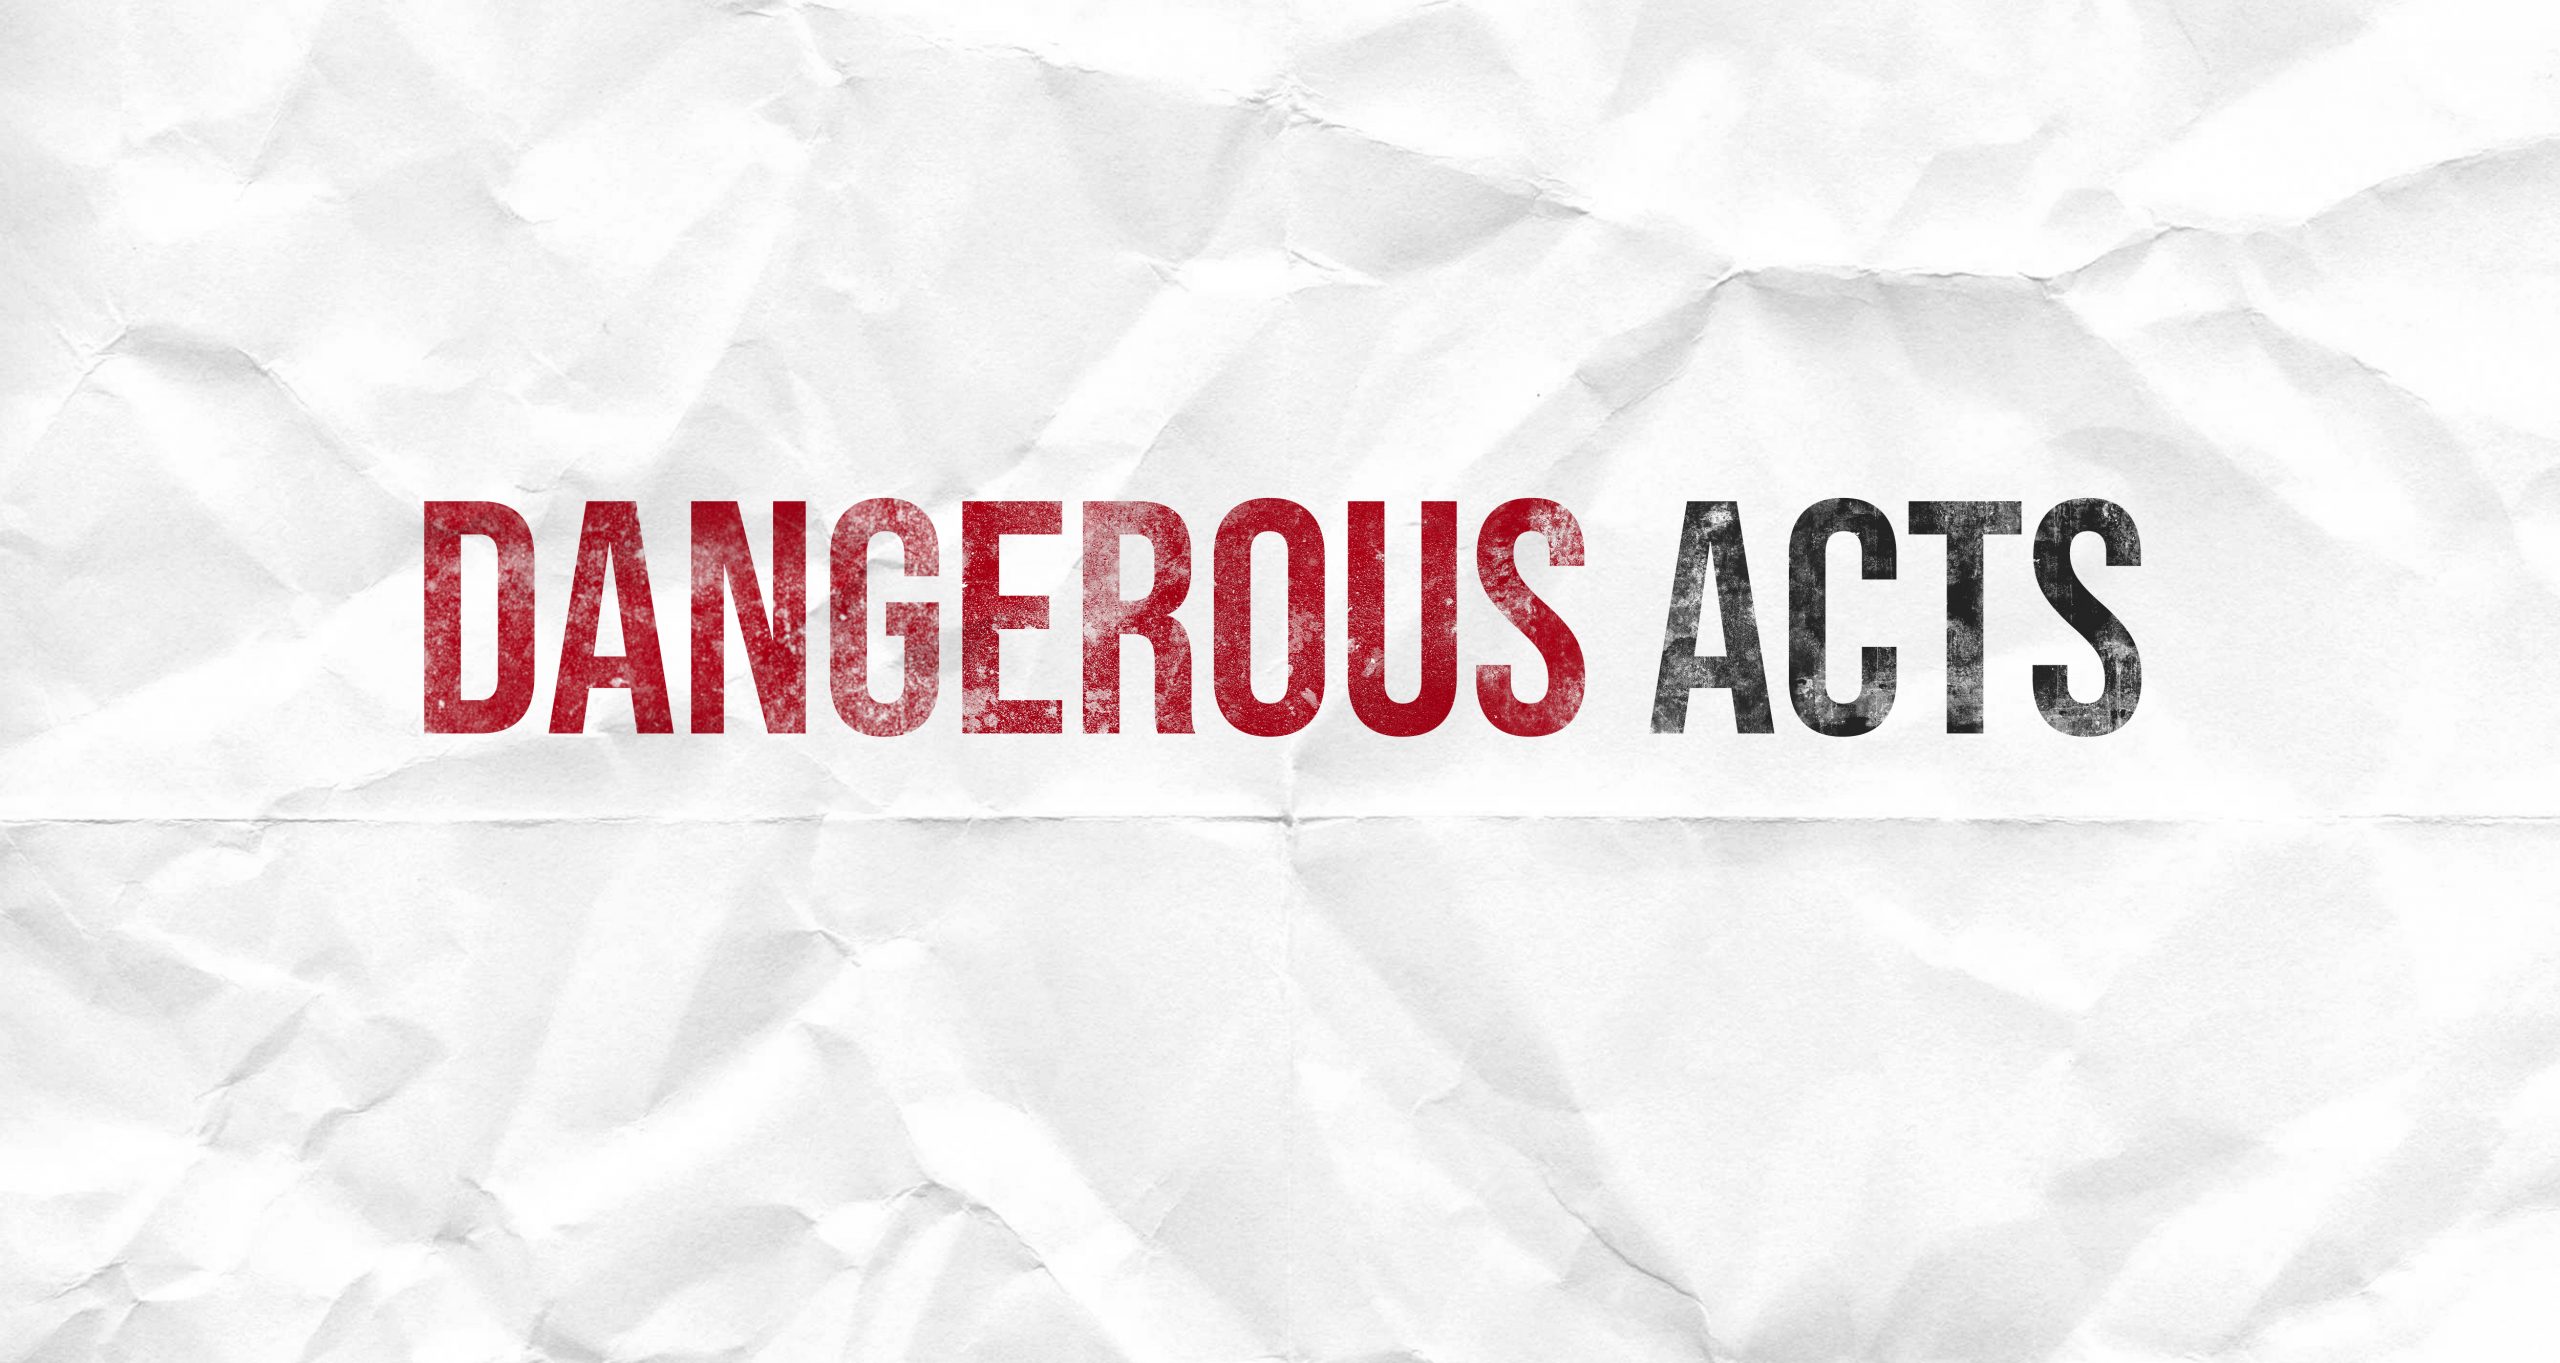 Dangerous Acts title image